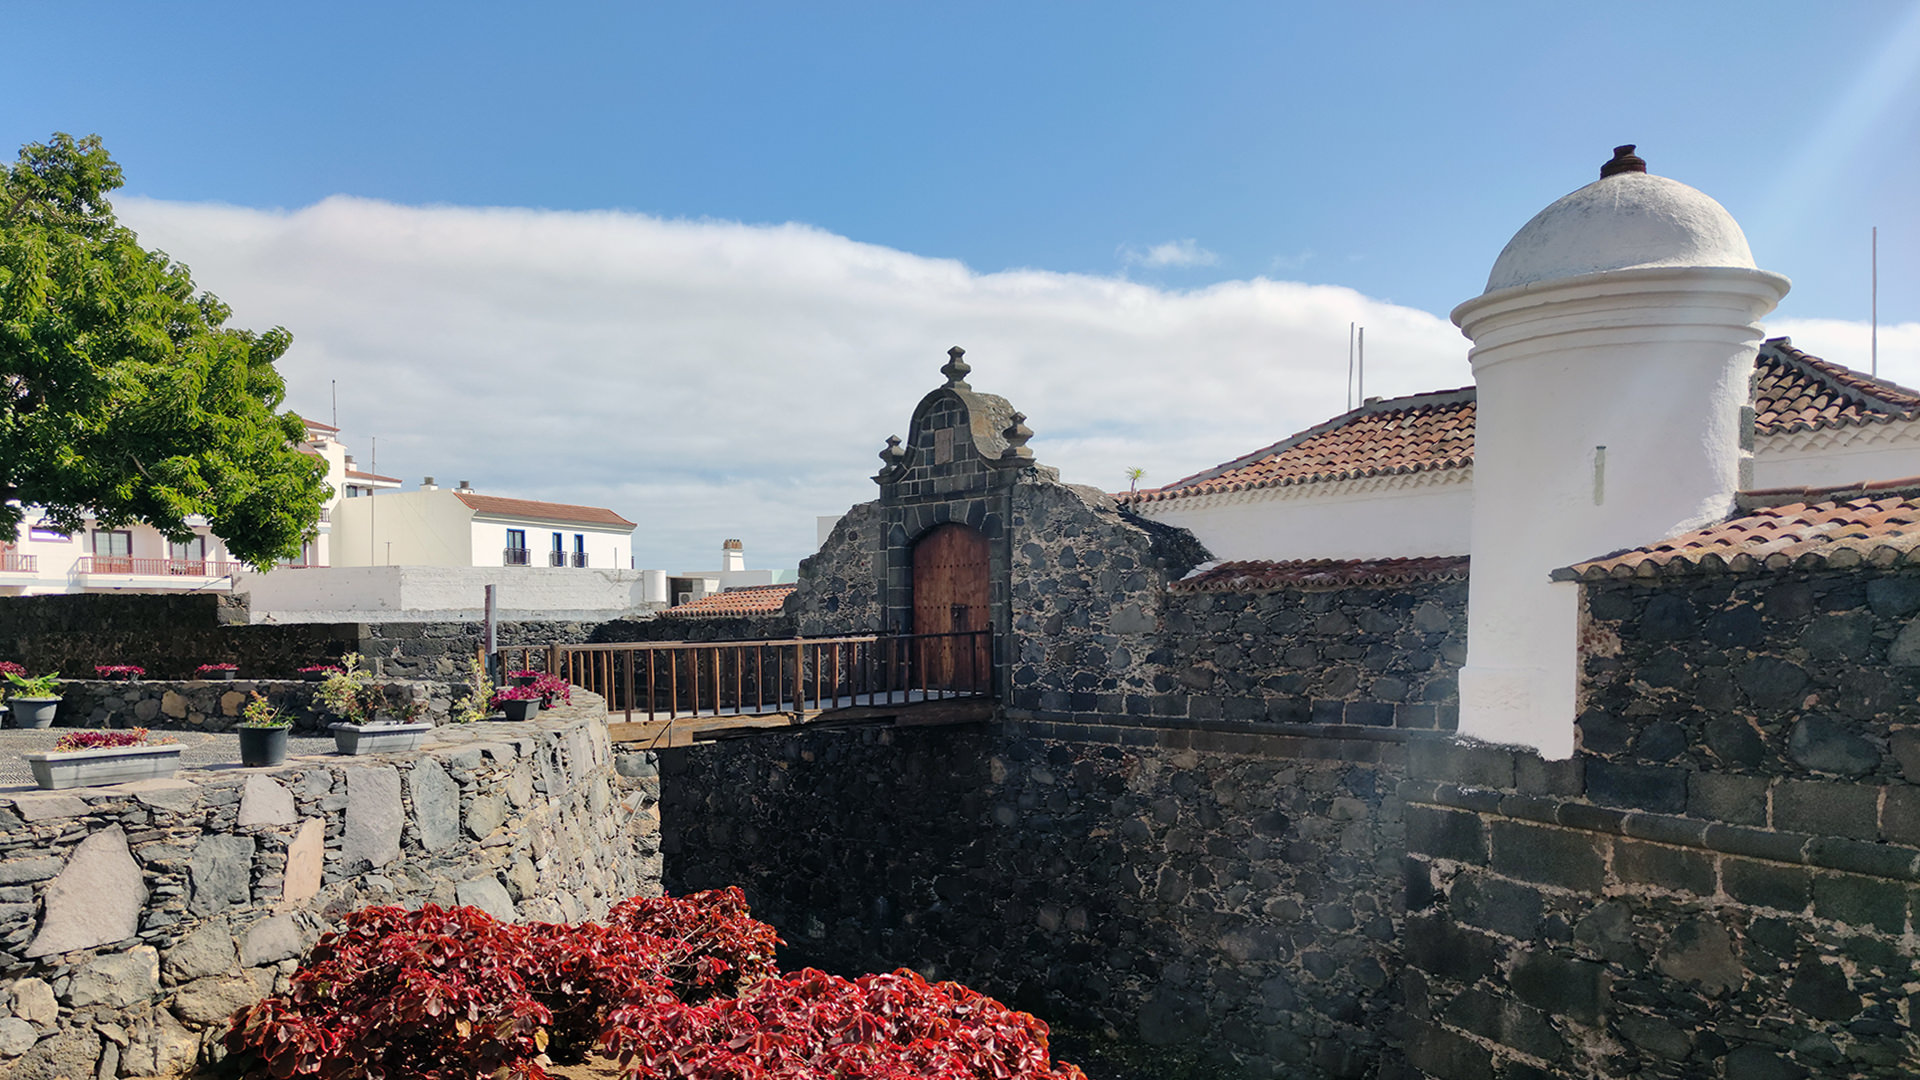 La capitale Santa Cruz de La Palma tours e visite guidate scopri la storia e il patrimonio storico e culturale della capitale de La Palma con una guida italiana